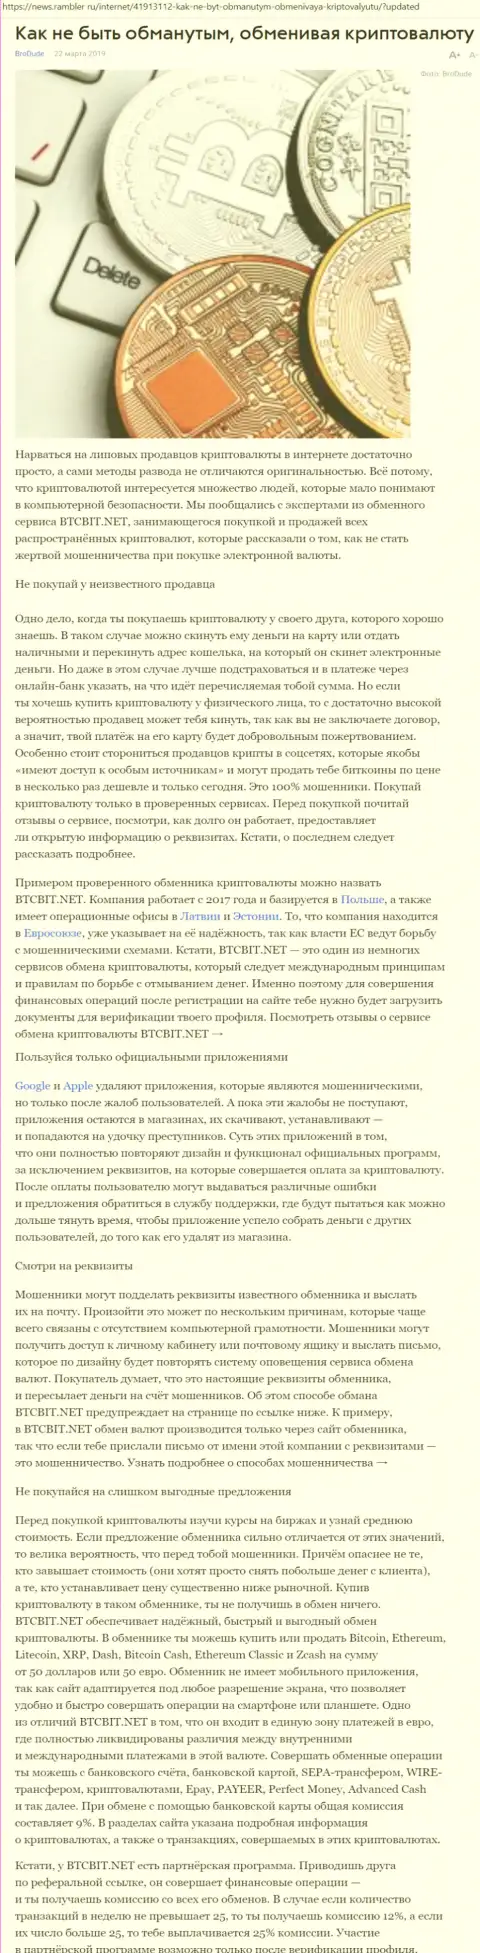 Статья о БТЦБИТ Нет на News Rambler Ru